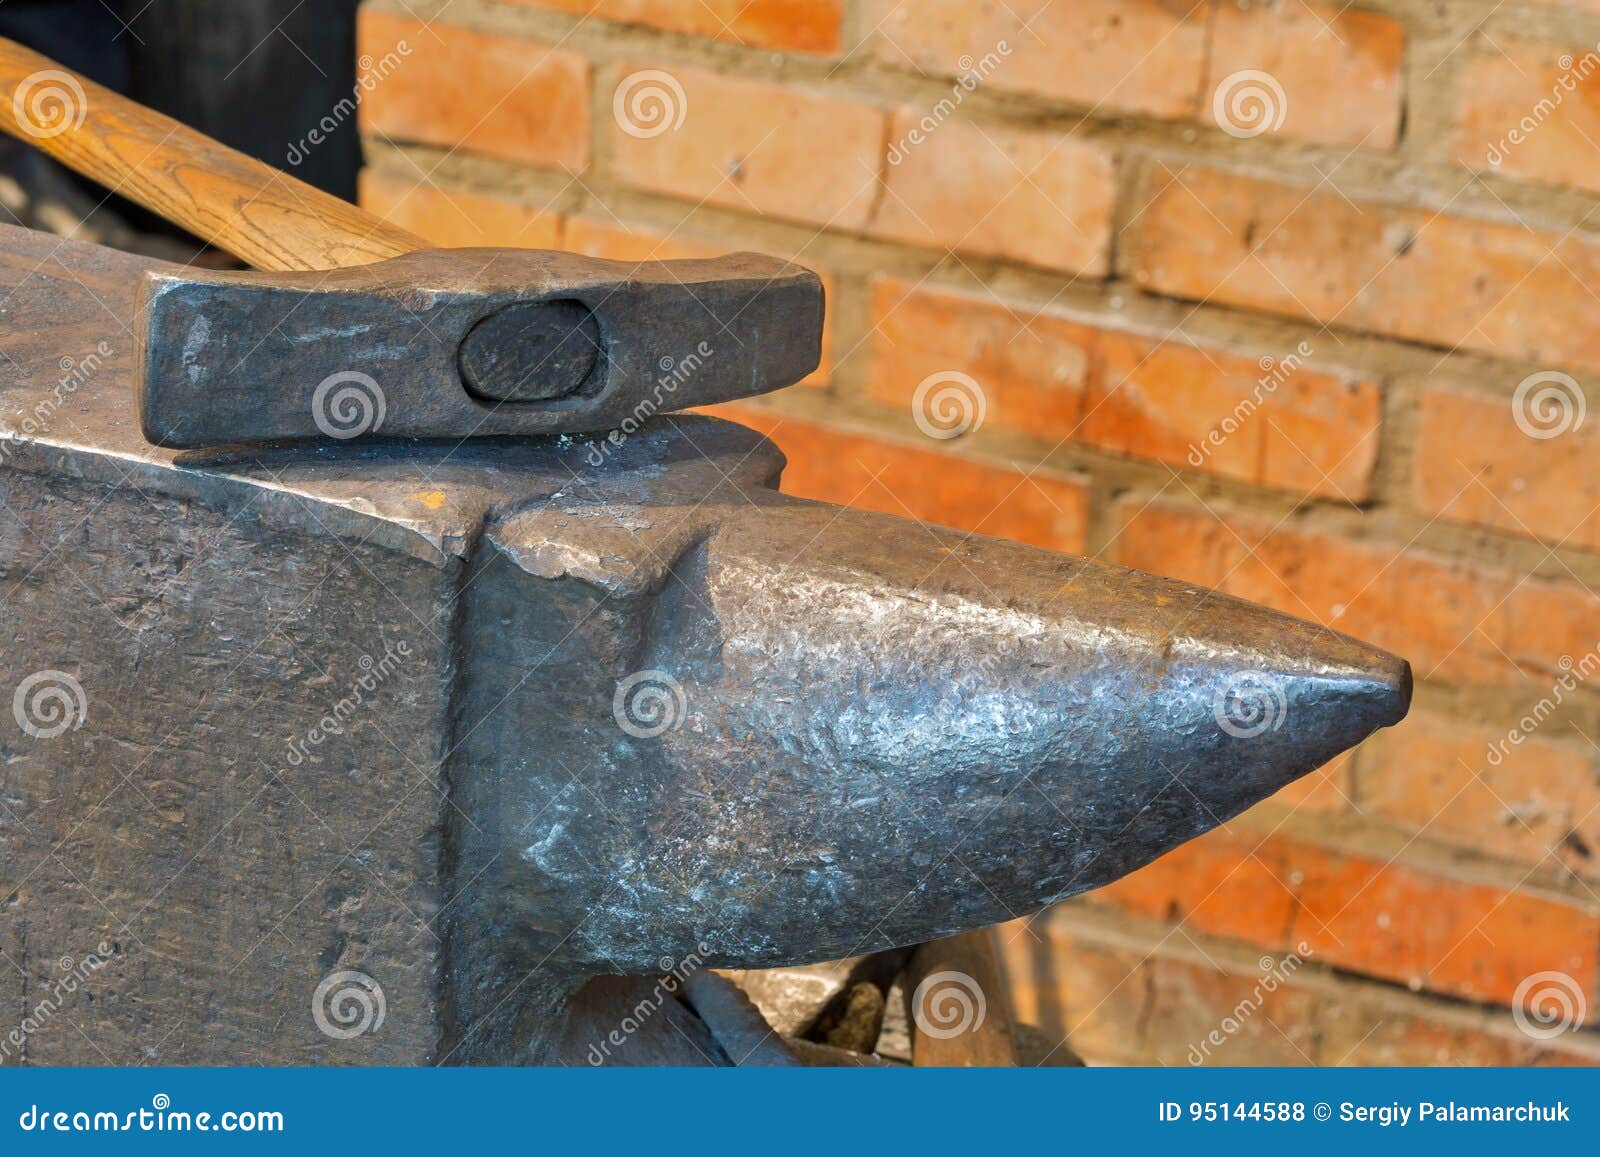 铁匠在户外处理在铁砧的马掌 编辑类库存照片. 图片 包括有 现有量, 橙色, 钉马掌铁匠, 暂挂, 手工 - 60870533